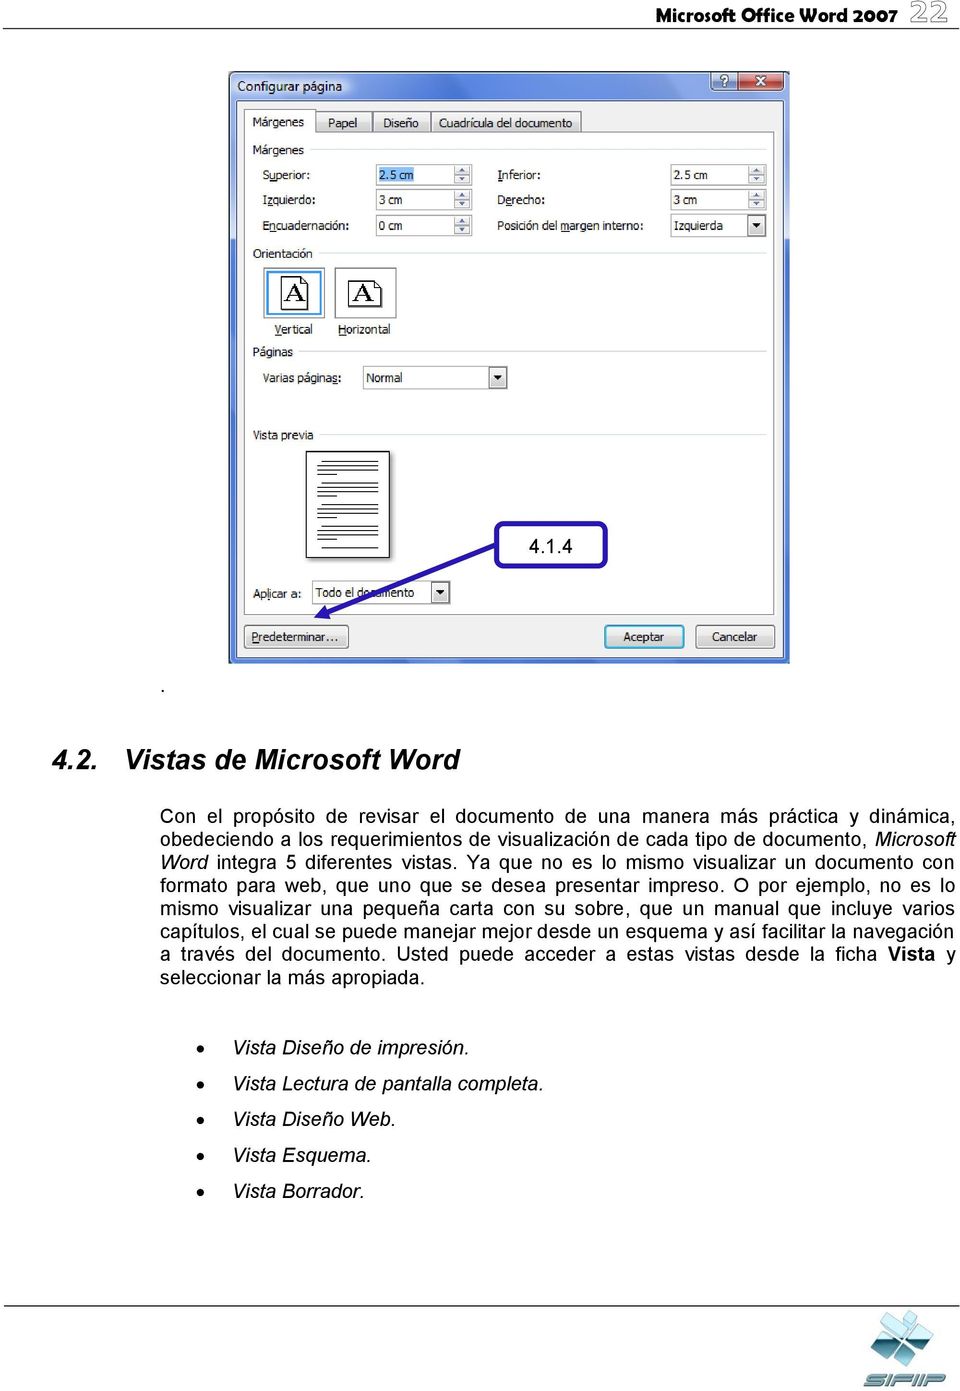 Microsoft Word integra 5 diferentes vistas. Ya que no es lo mismo visualizar un documento con formato para web, que uno que se desea presentar impreso.